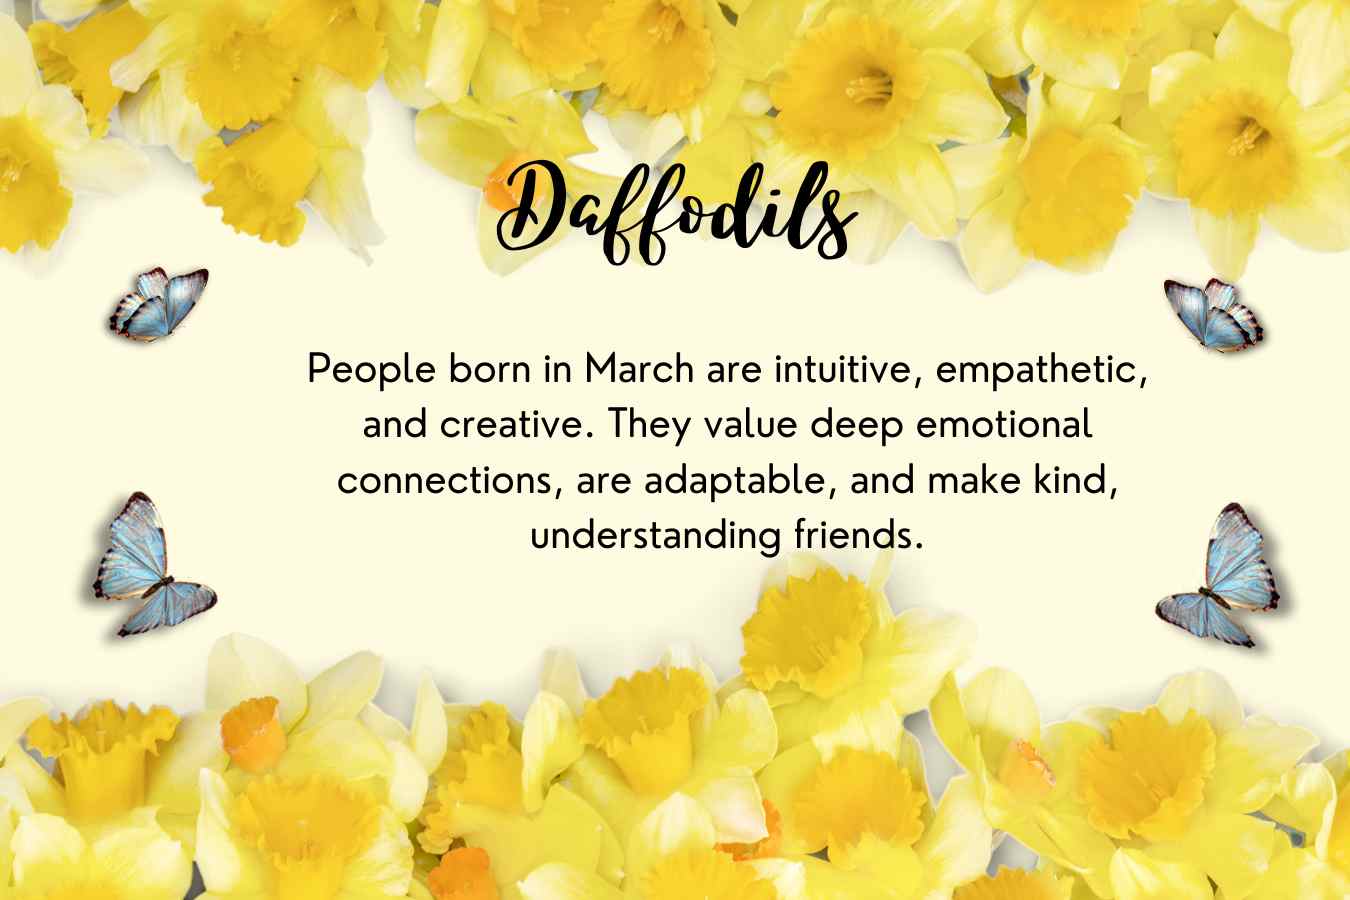 March Birth Flower: Daffodil